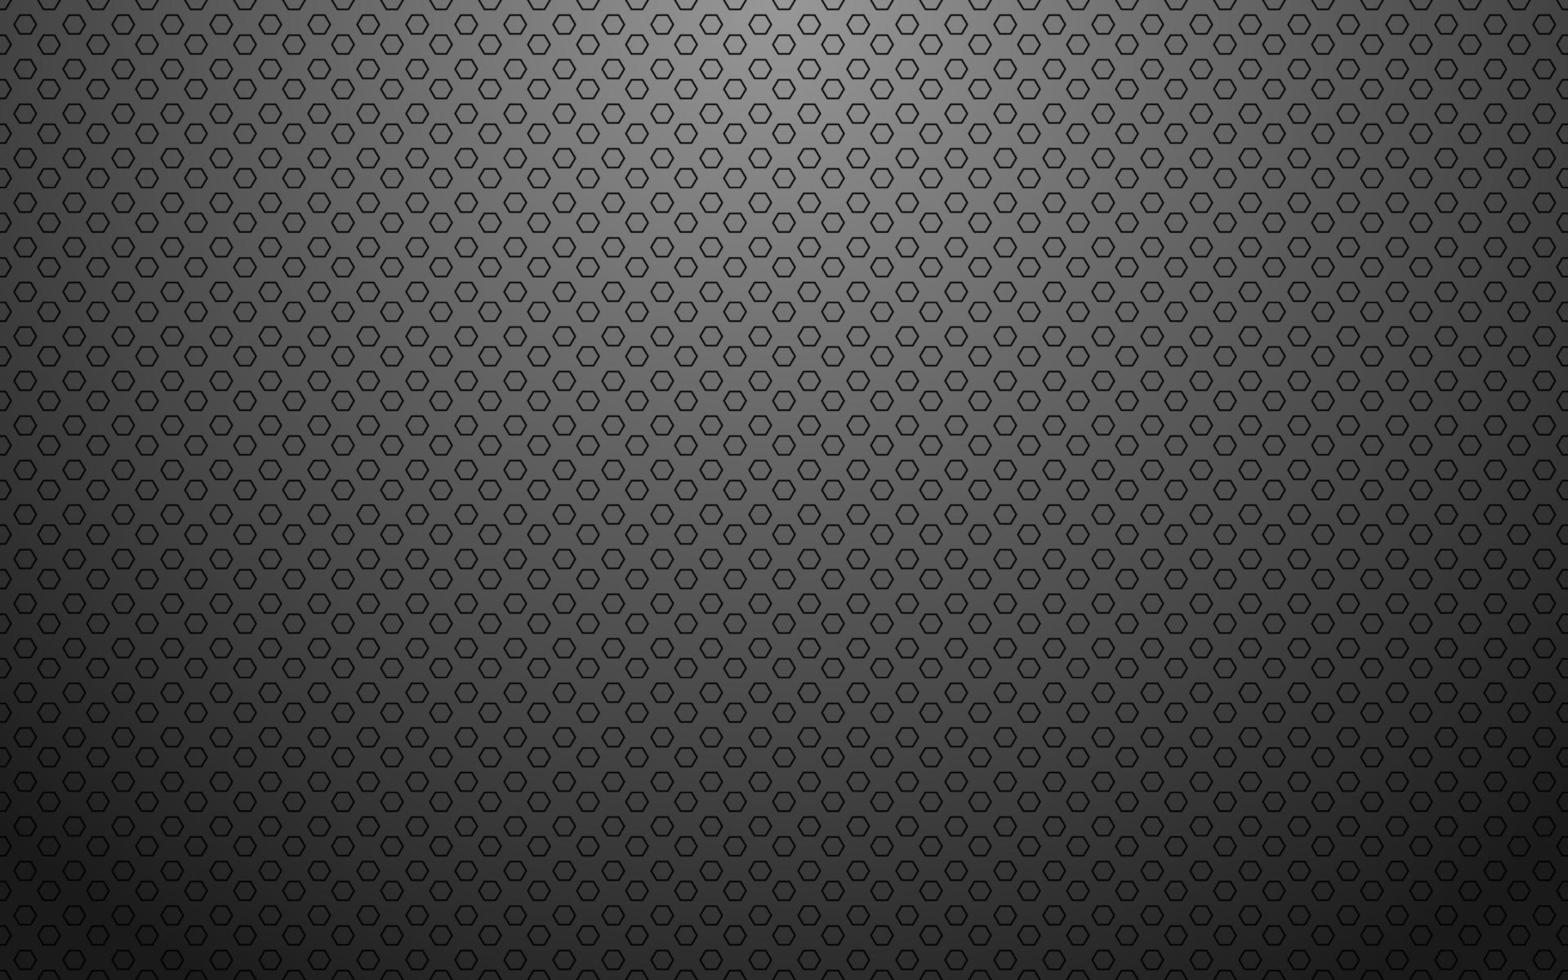 sfondo vettoriale astratto grigio con motivo poligonale. modello tecnologico per banner e presentazione. illustrazione di design vettoriale moderno